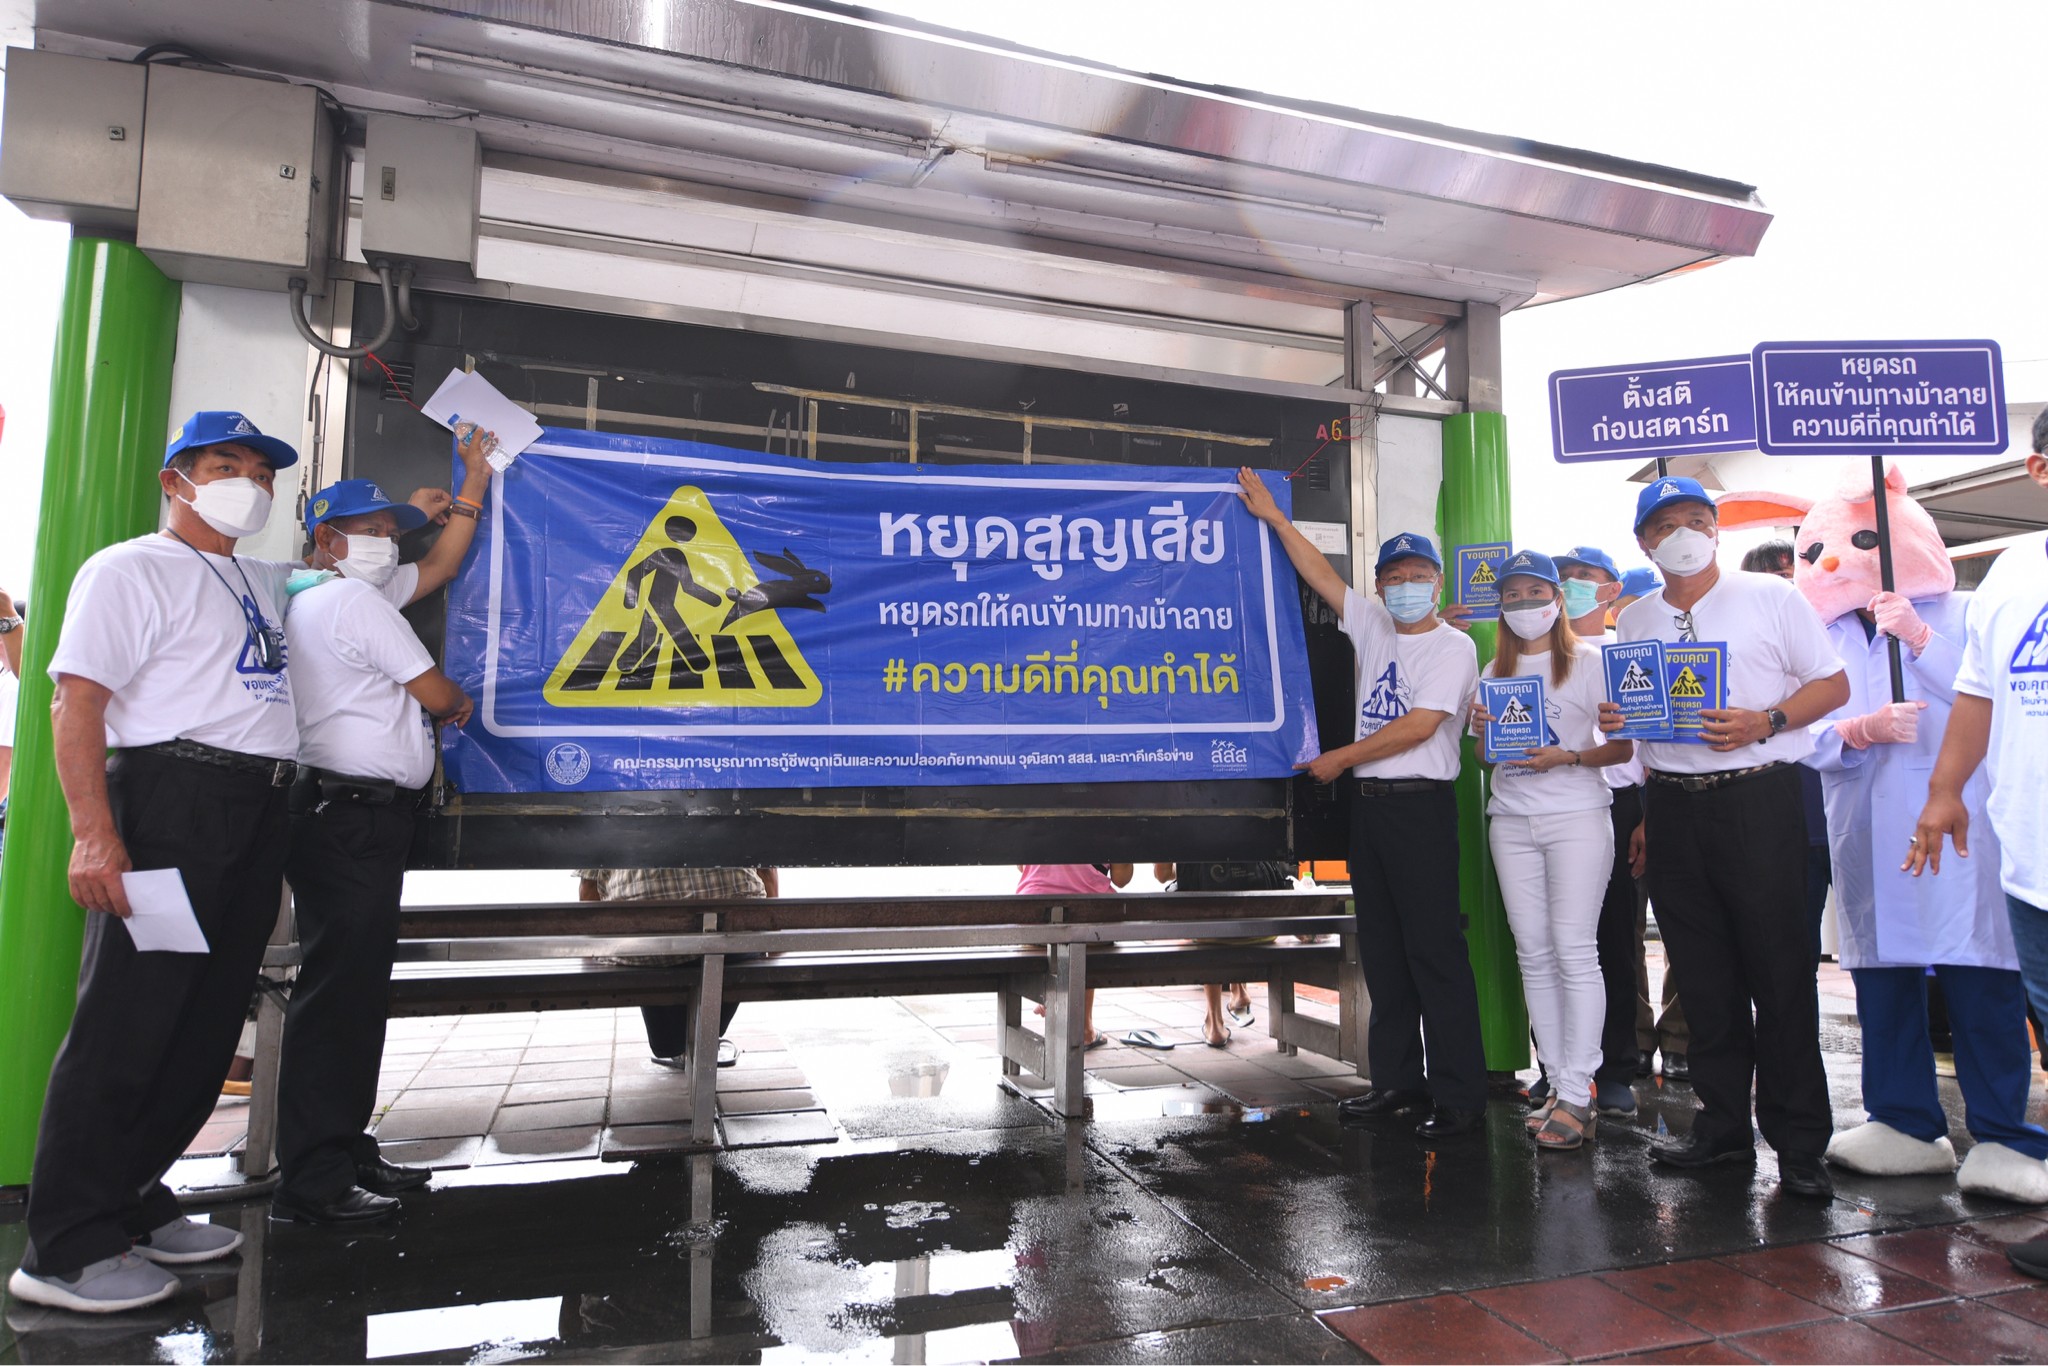 สร้างจิตสำนึกผู้ใช้รถใช้ถนน “หยุดสูญเสีย หยุดรถ ให้คนข้ามทางม้าลาย” thaihealth